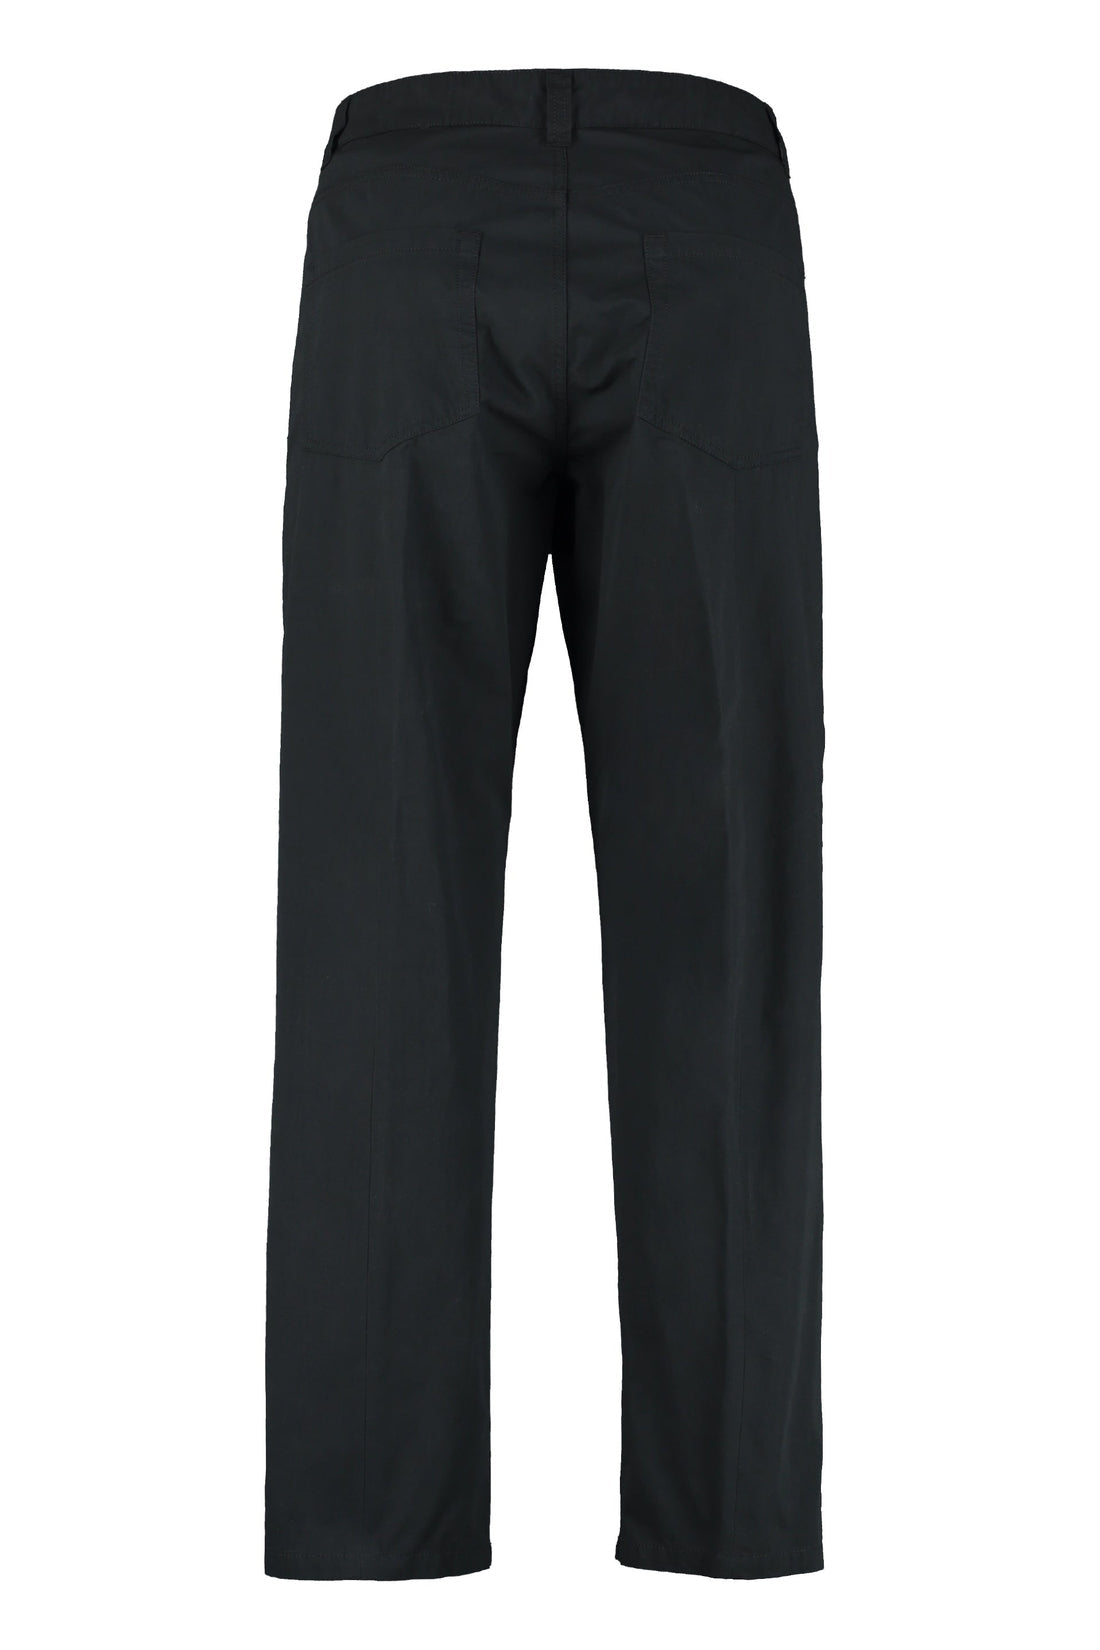 Moncler Genius-OUTLET-SALE-5 Moncler Craig Green - Cotton-blend straight-leg trousers-ARCHIVIST